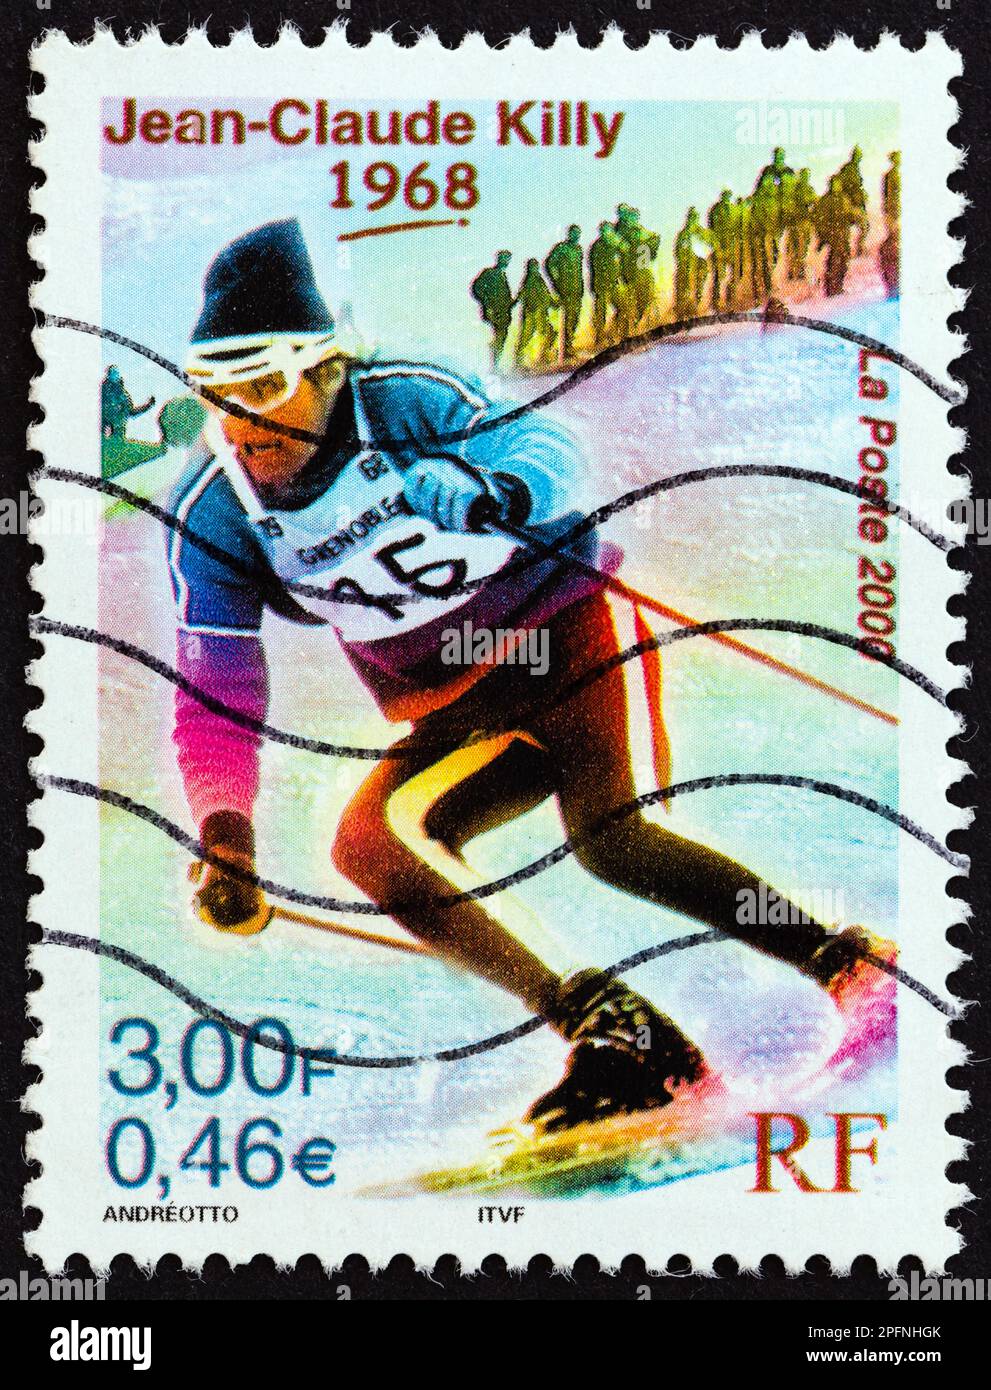 RANCE - CIRCA 2000: Un francobollo stampato in Francia mostra Jean-Claude Killy (medaglia d'oro olimpica in discesa, slalom gigante e speciale, 1968), circa 2000. Foto Stock